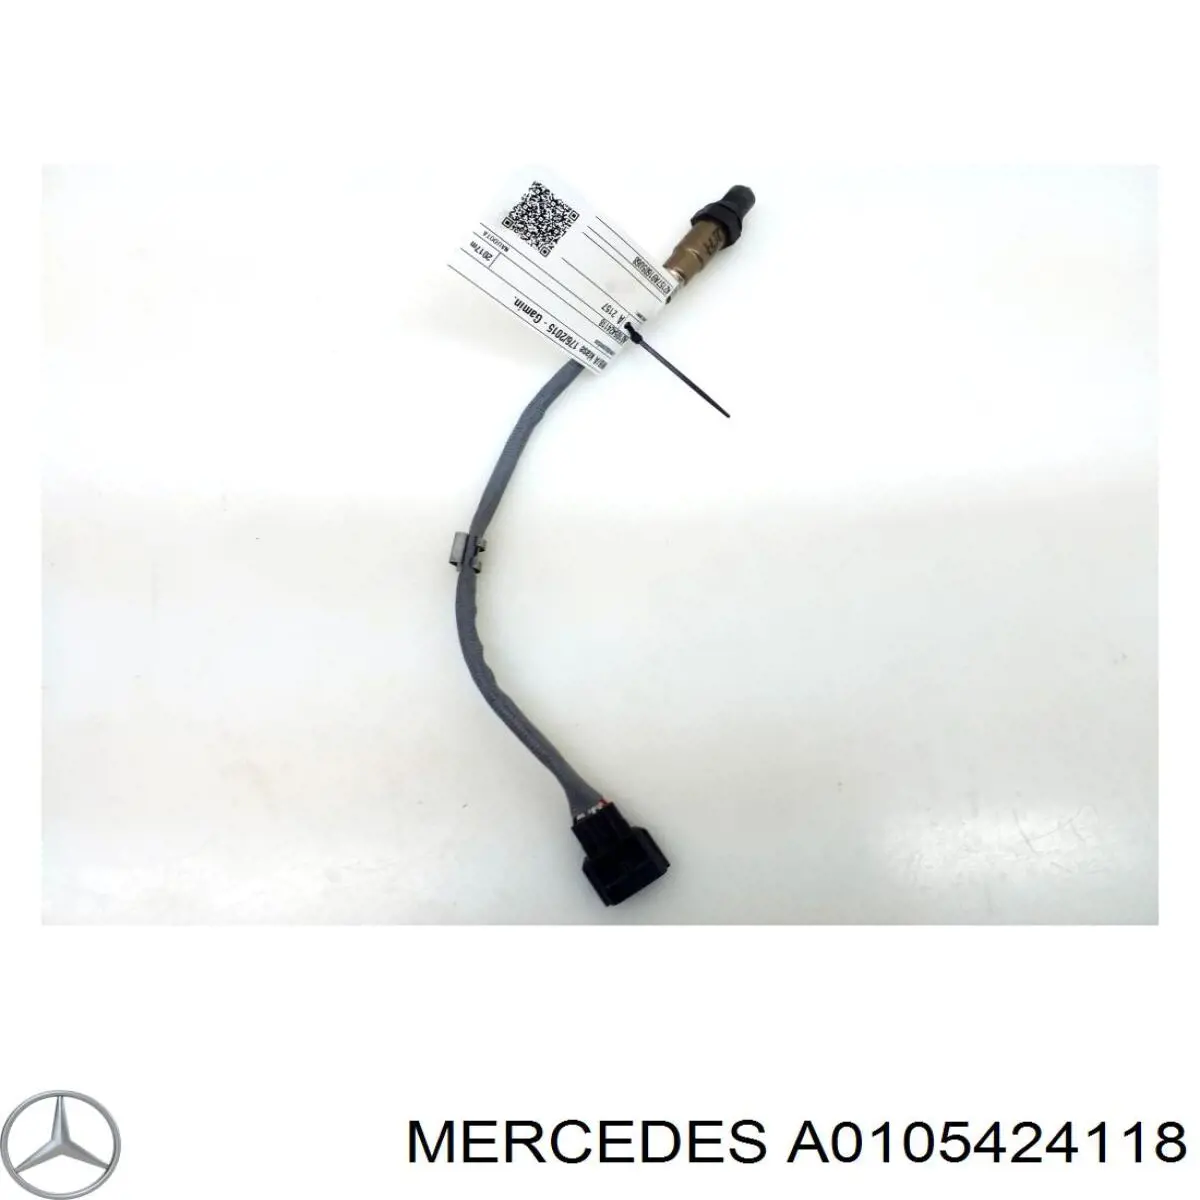 A0105424118 Mercedes sonda lambda sensor de oxigeno para catalizador